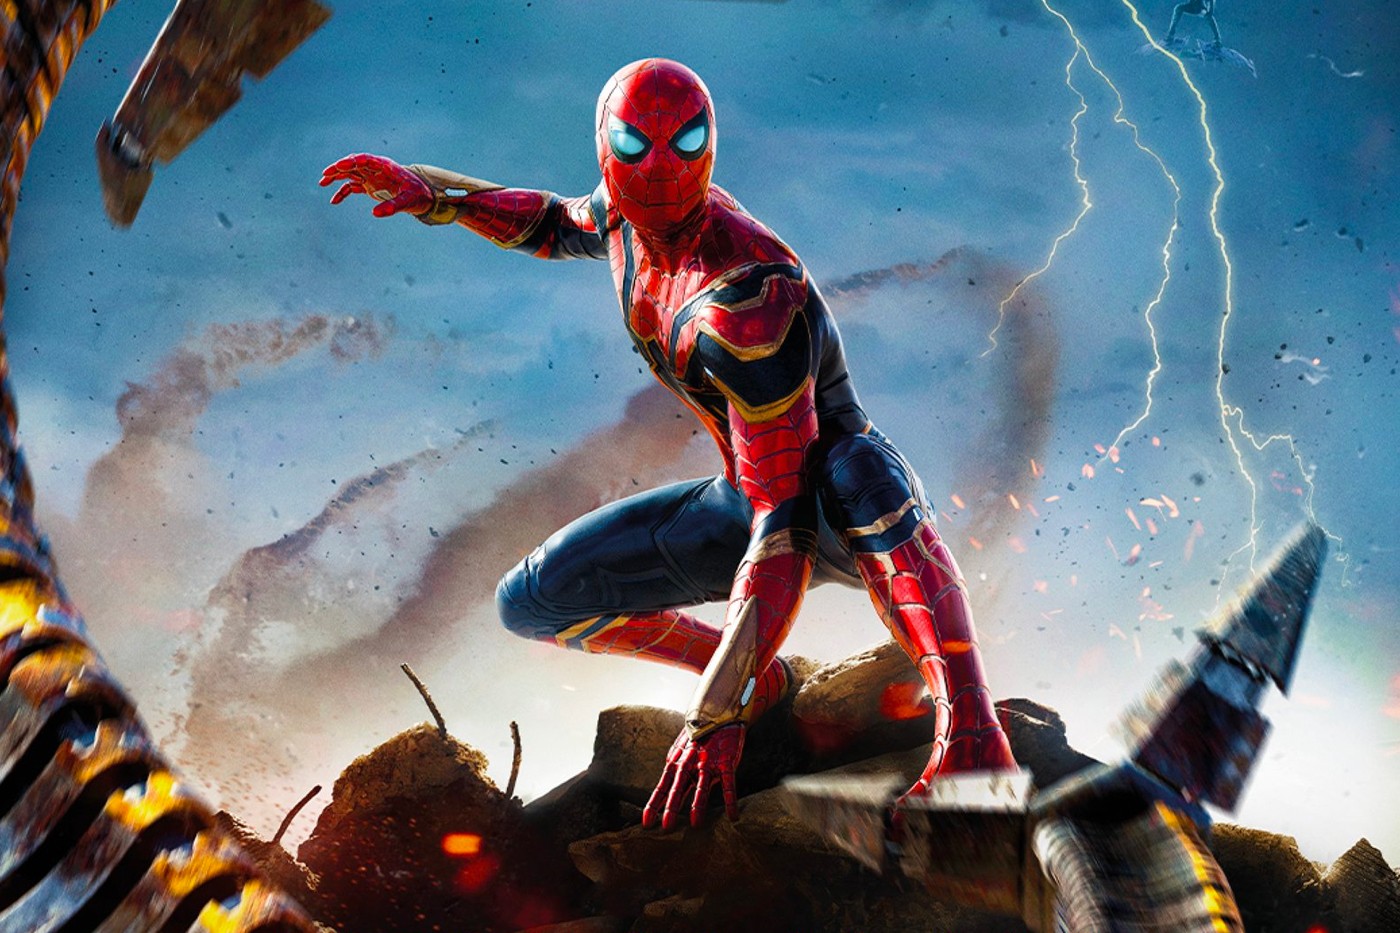 《蜘蛛侠 Spider-Man: No Way Home》最新曝光照片证实「三代蜘蛛侠」共同现身